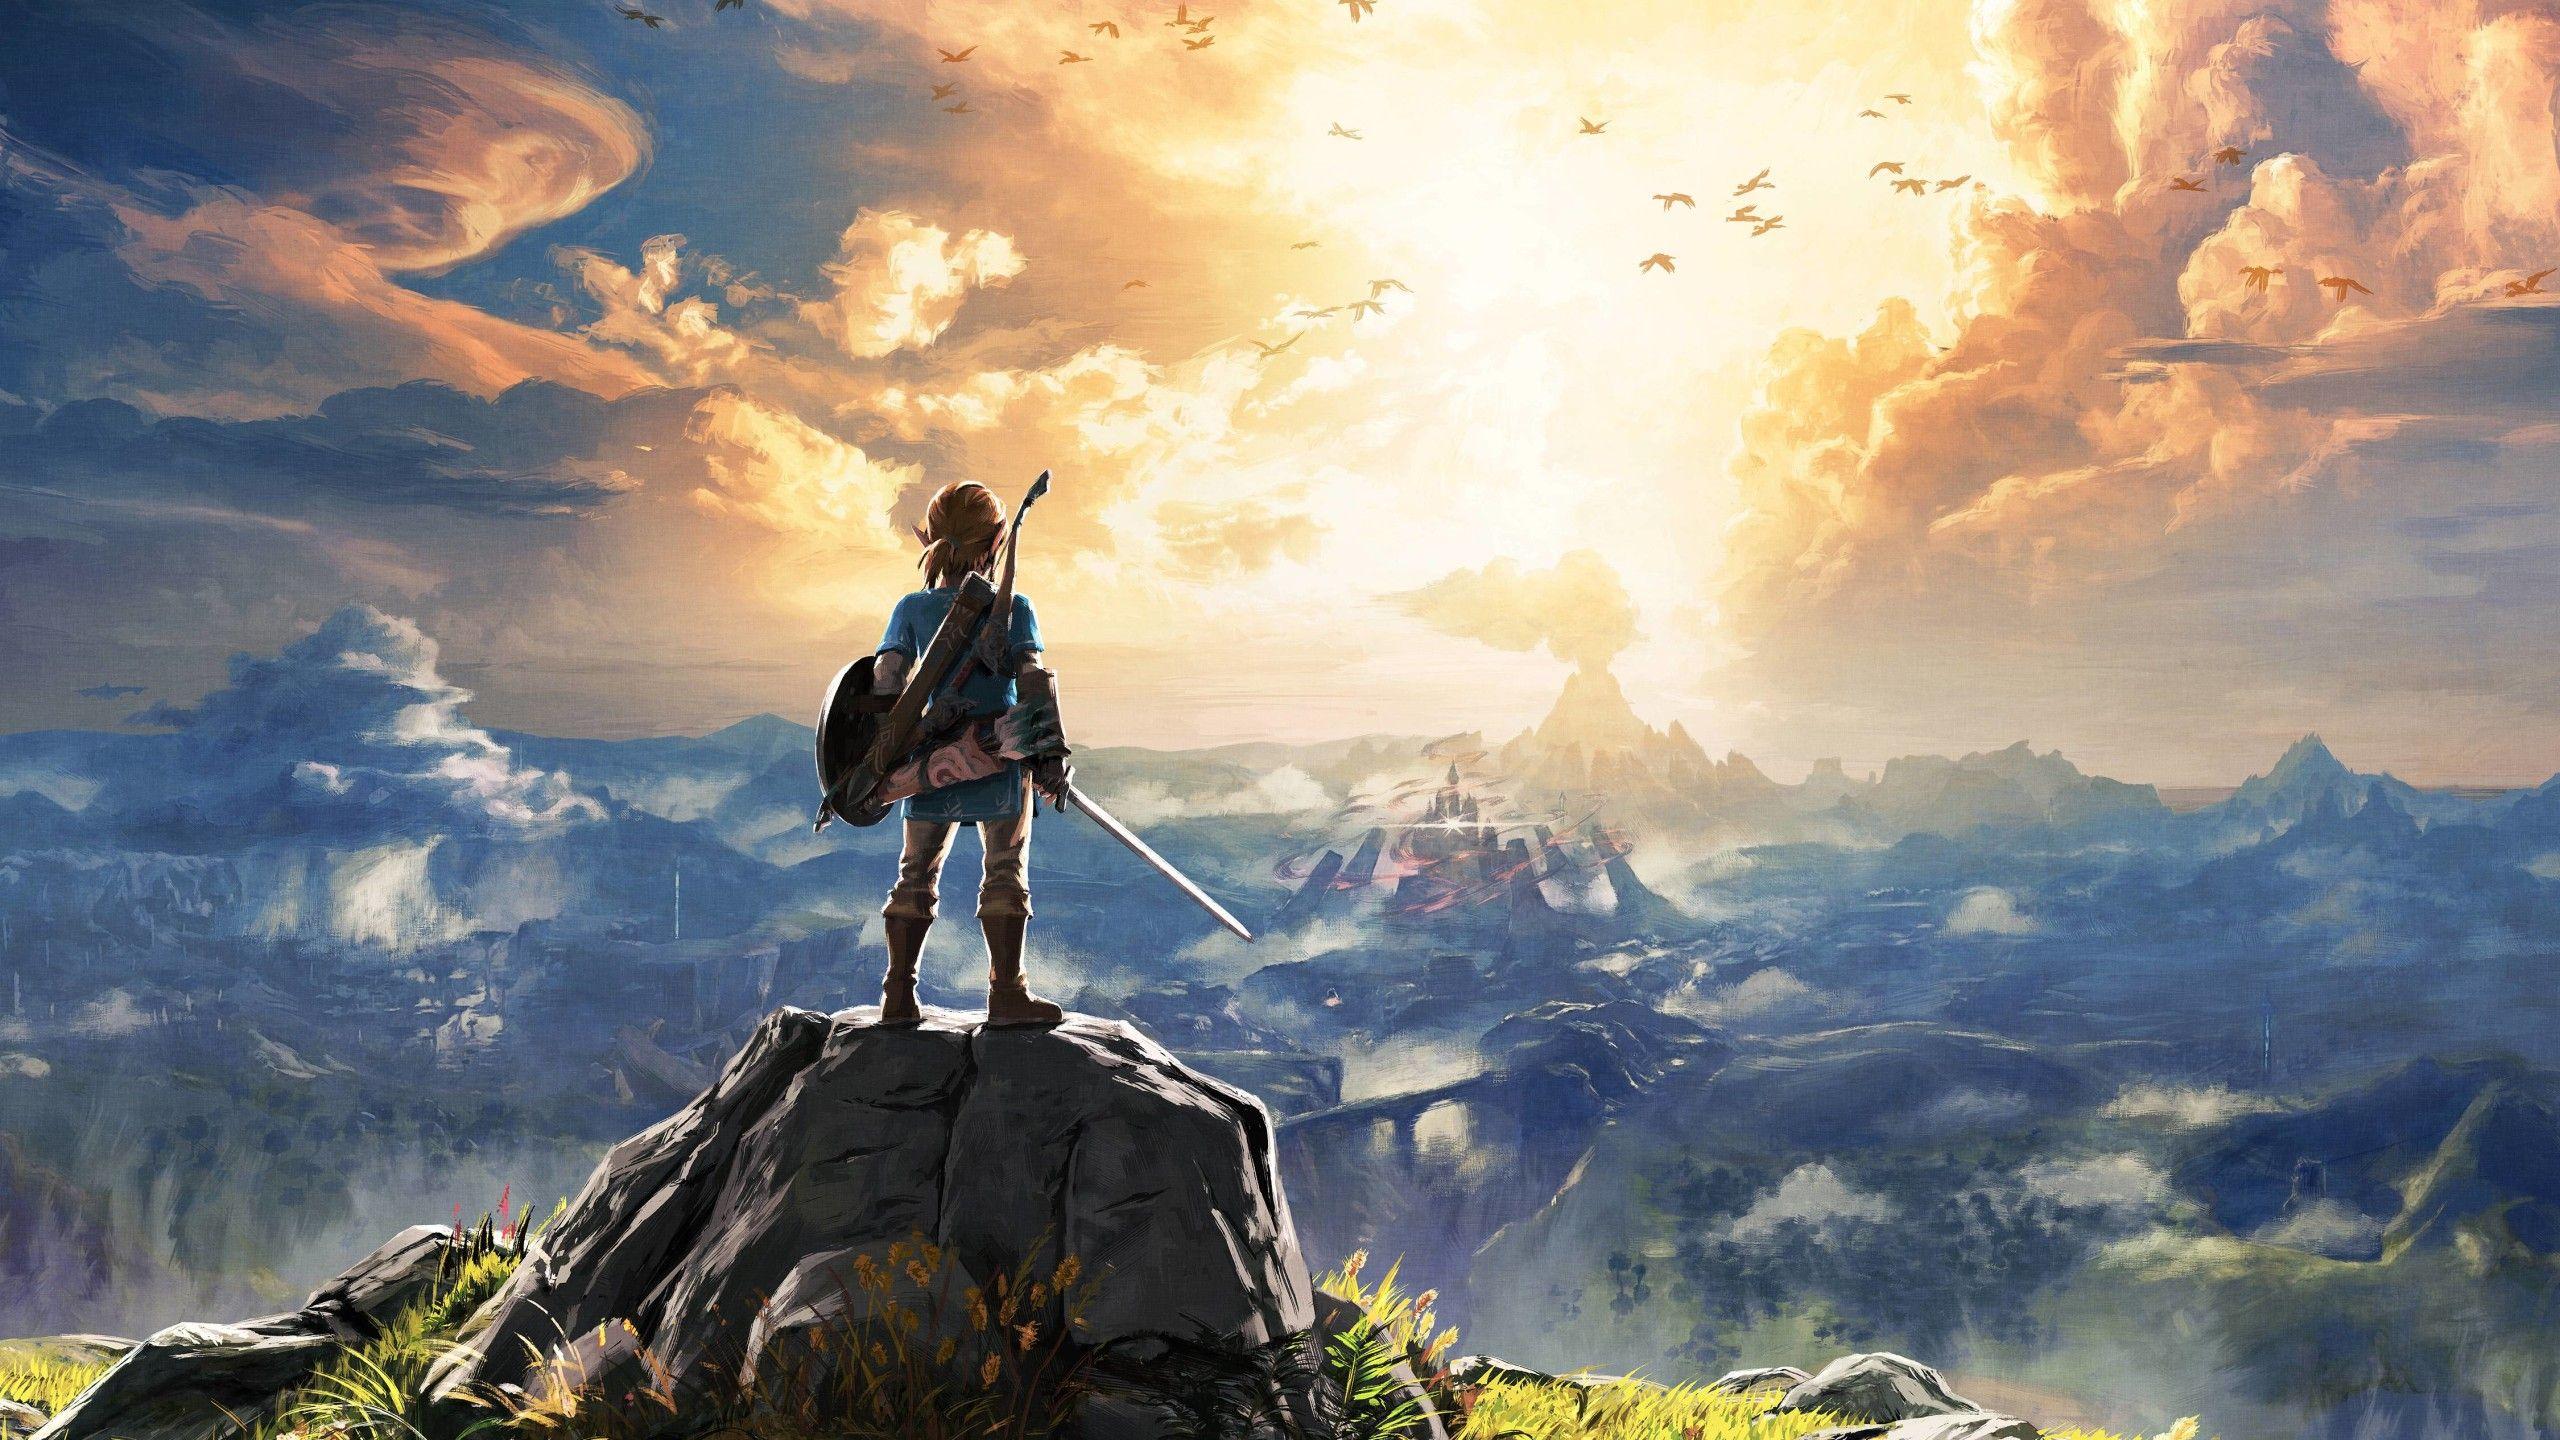 2560x1440 The Legend Of Zelda Breath Of The Wild 4k 1440P Độ phân giải HD Hình nền 4k, Hình ảnh, Bối cảnh, Hình ảnh và Hình ảnh